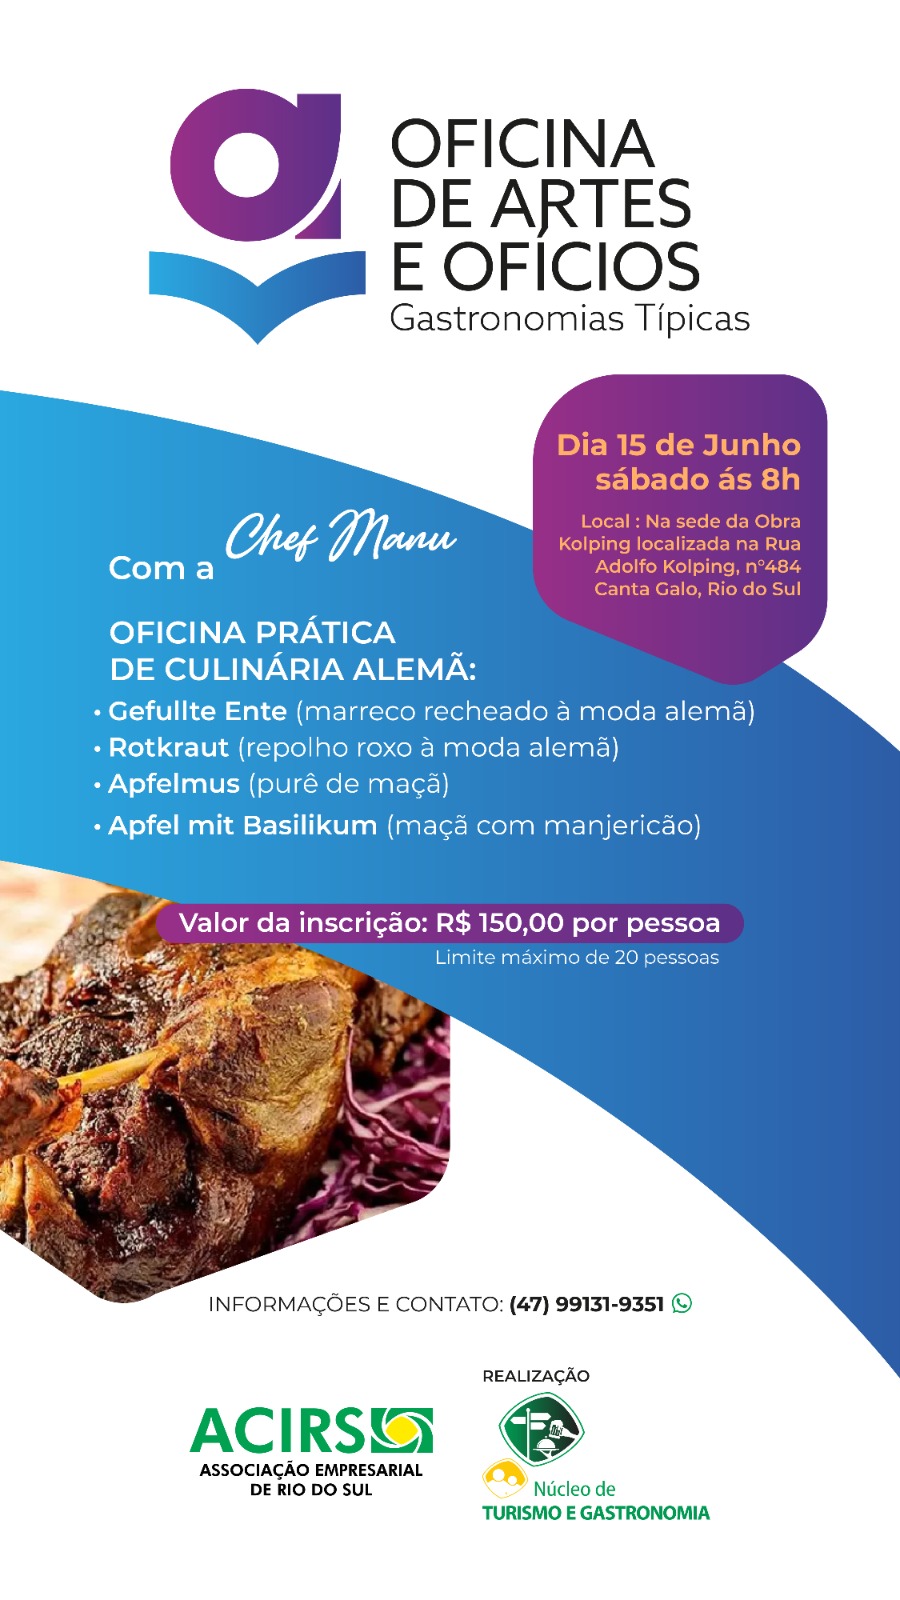 Imagem destaque na postagem Núcleo de Turismo e Gastronomia da ACIRS promove 1ª Oficina de Artes e Ofícios Gastronomias Típicas